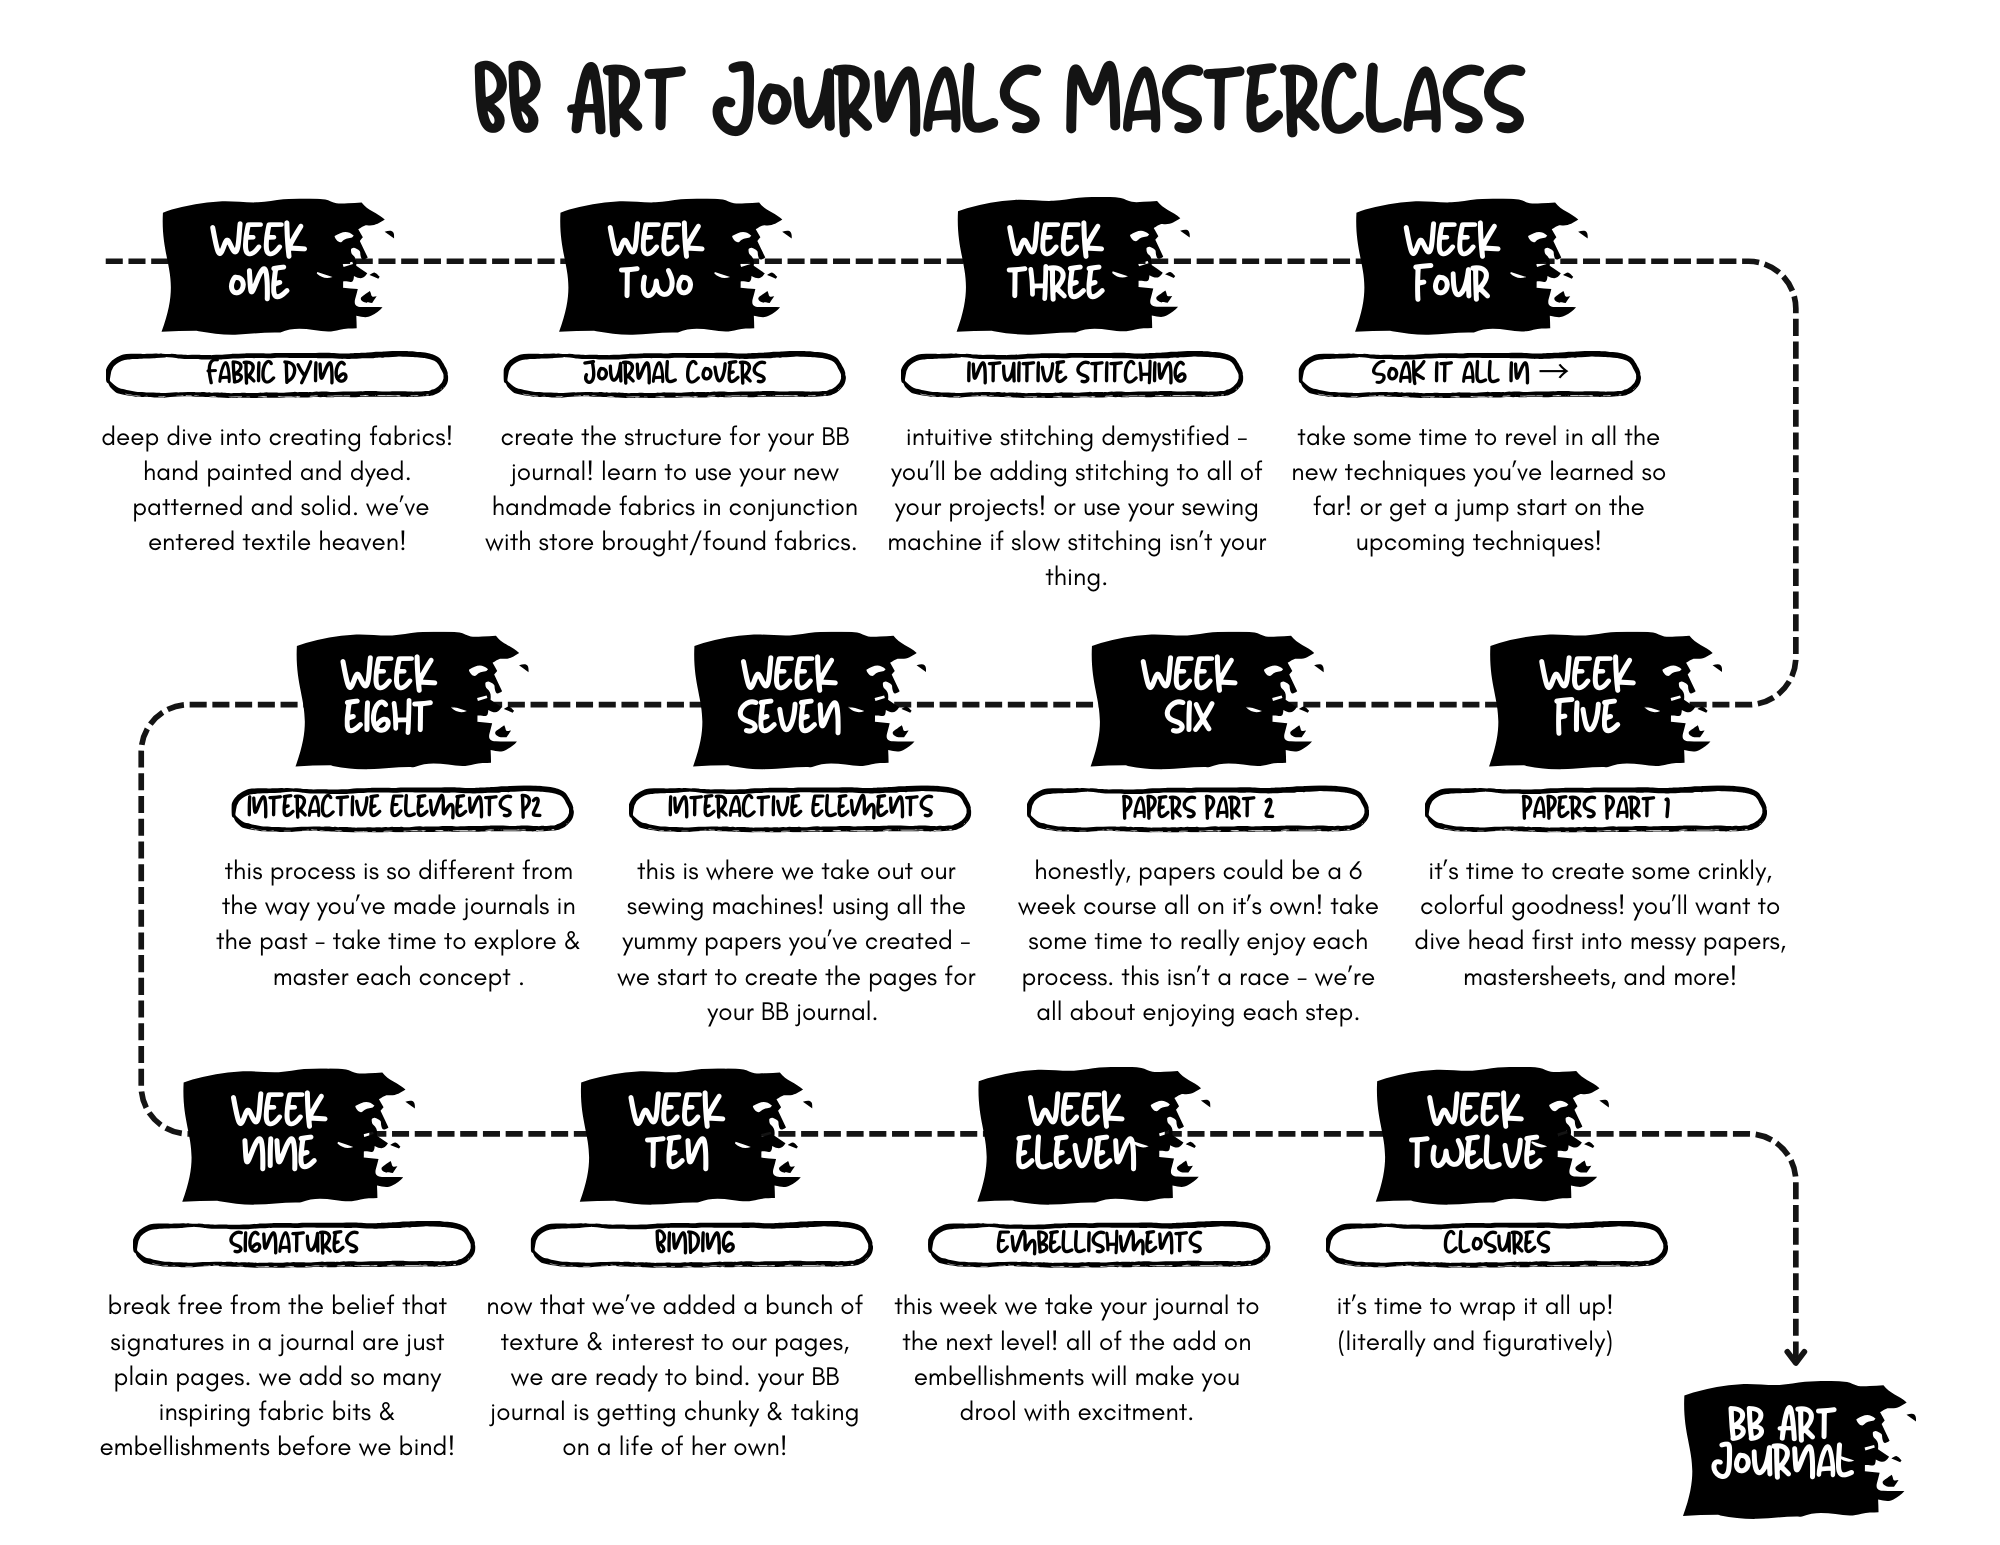 BB Art Journals Masterclass Timeline